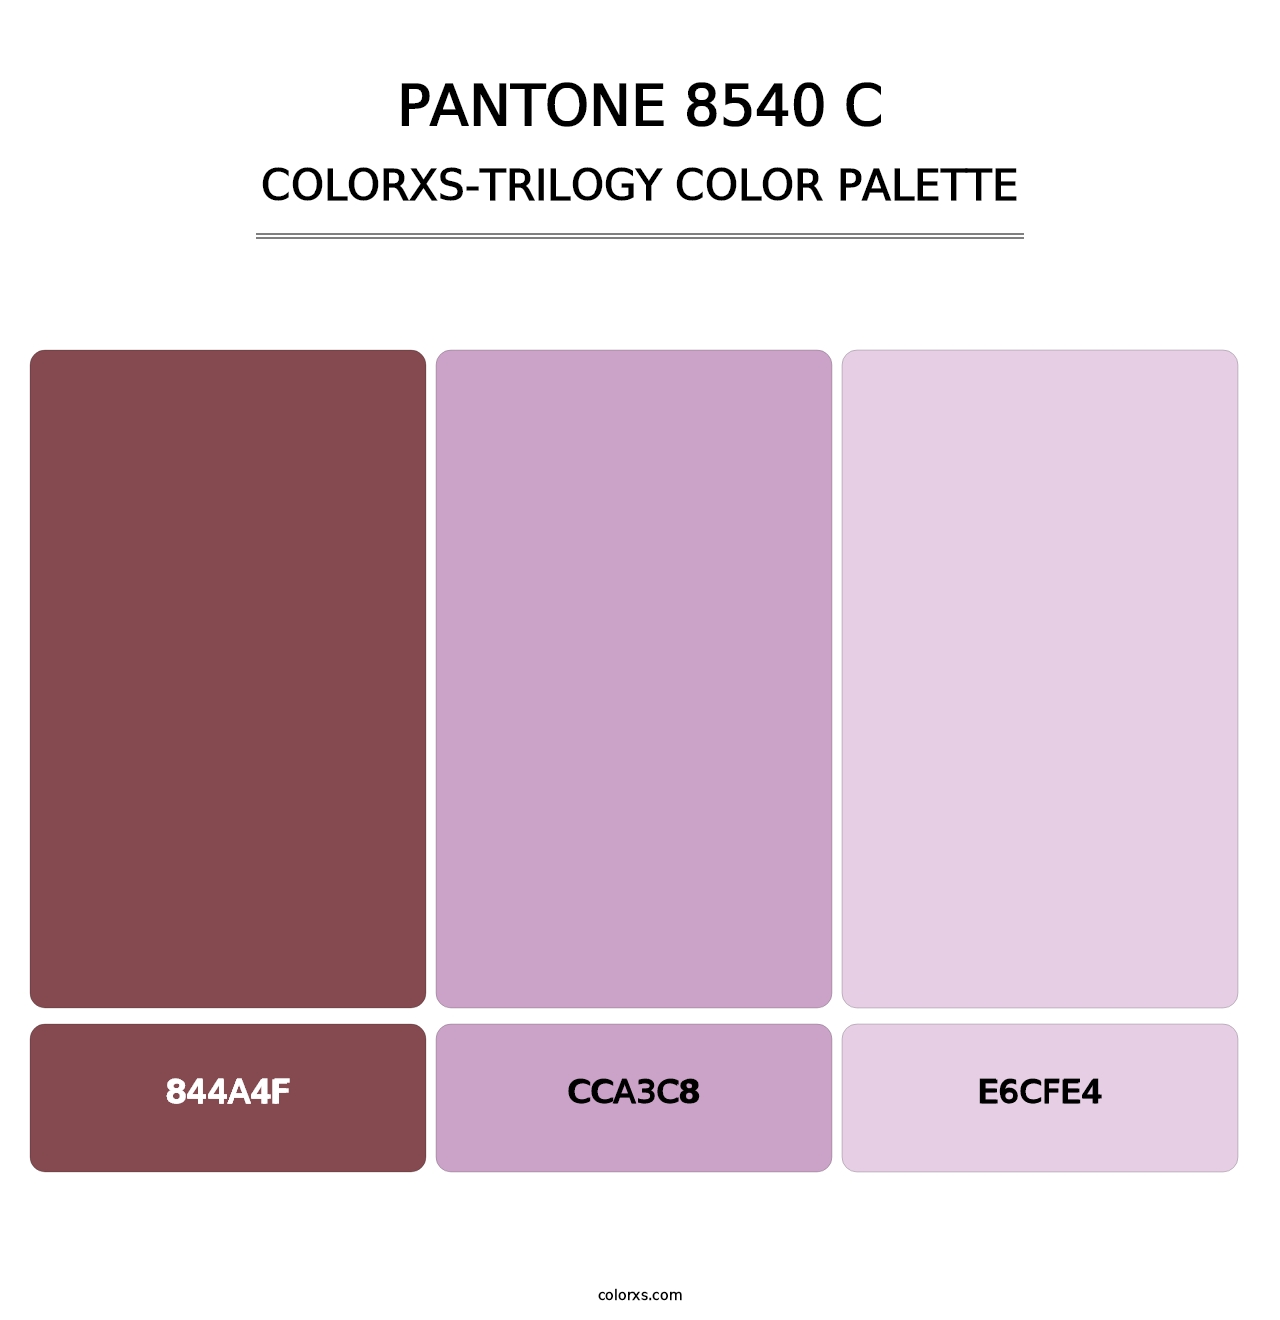 PANTONE 8540 C - Colorxs Trilogy Palette